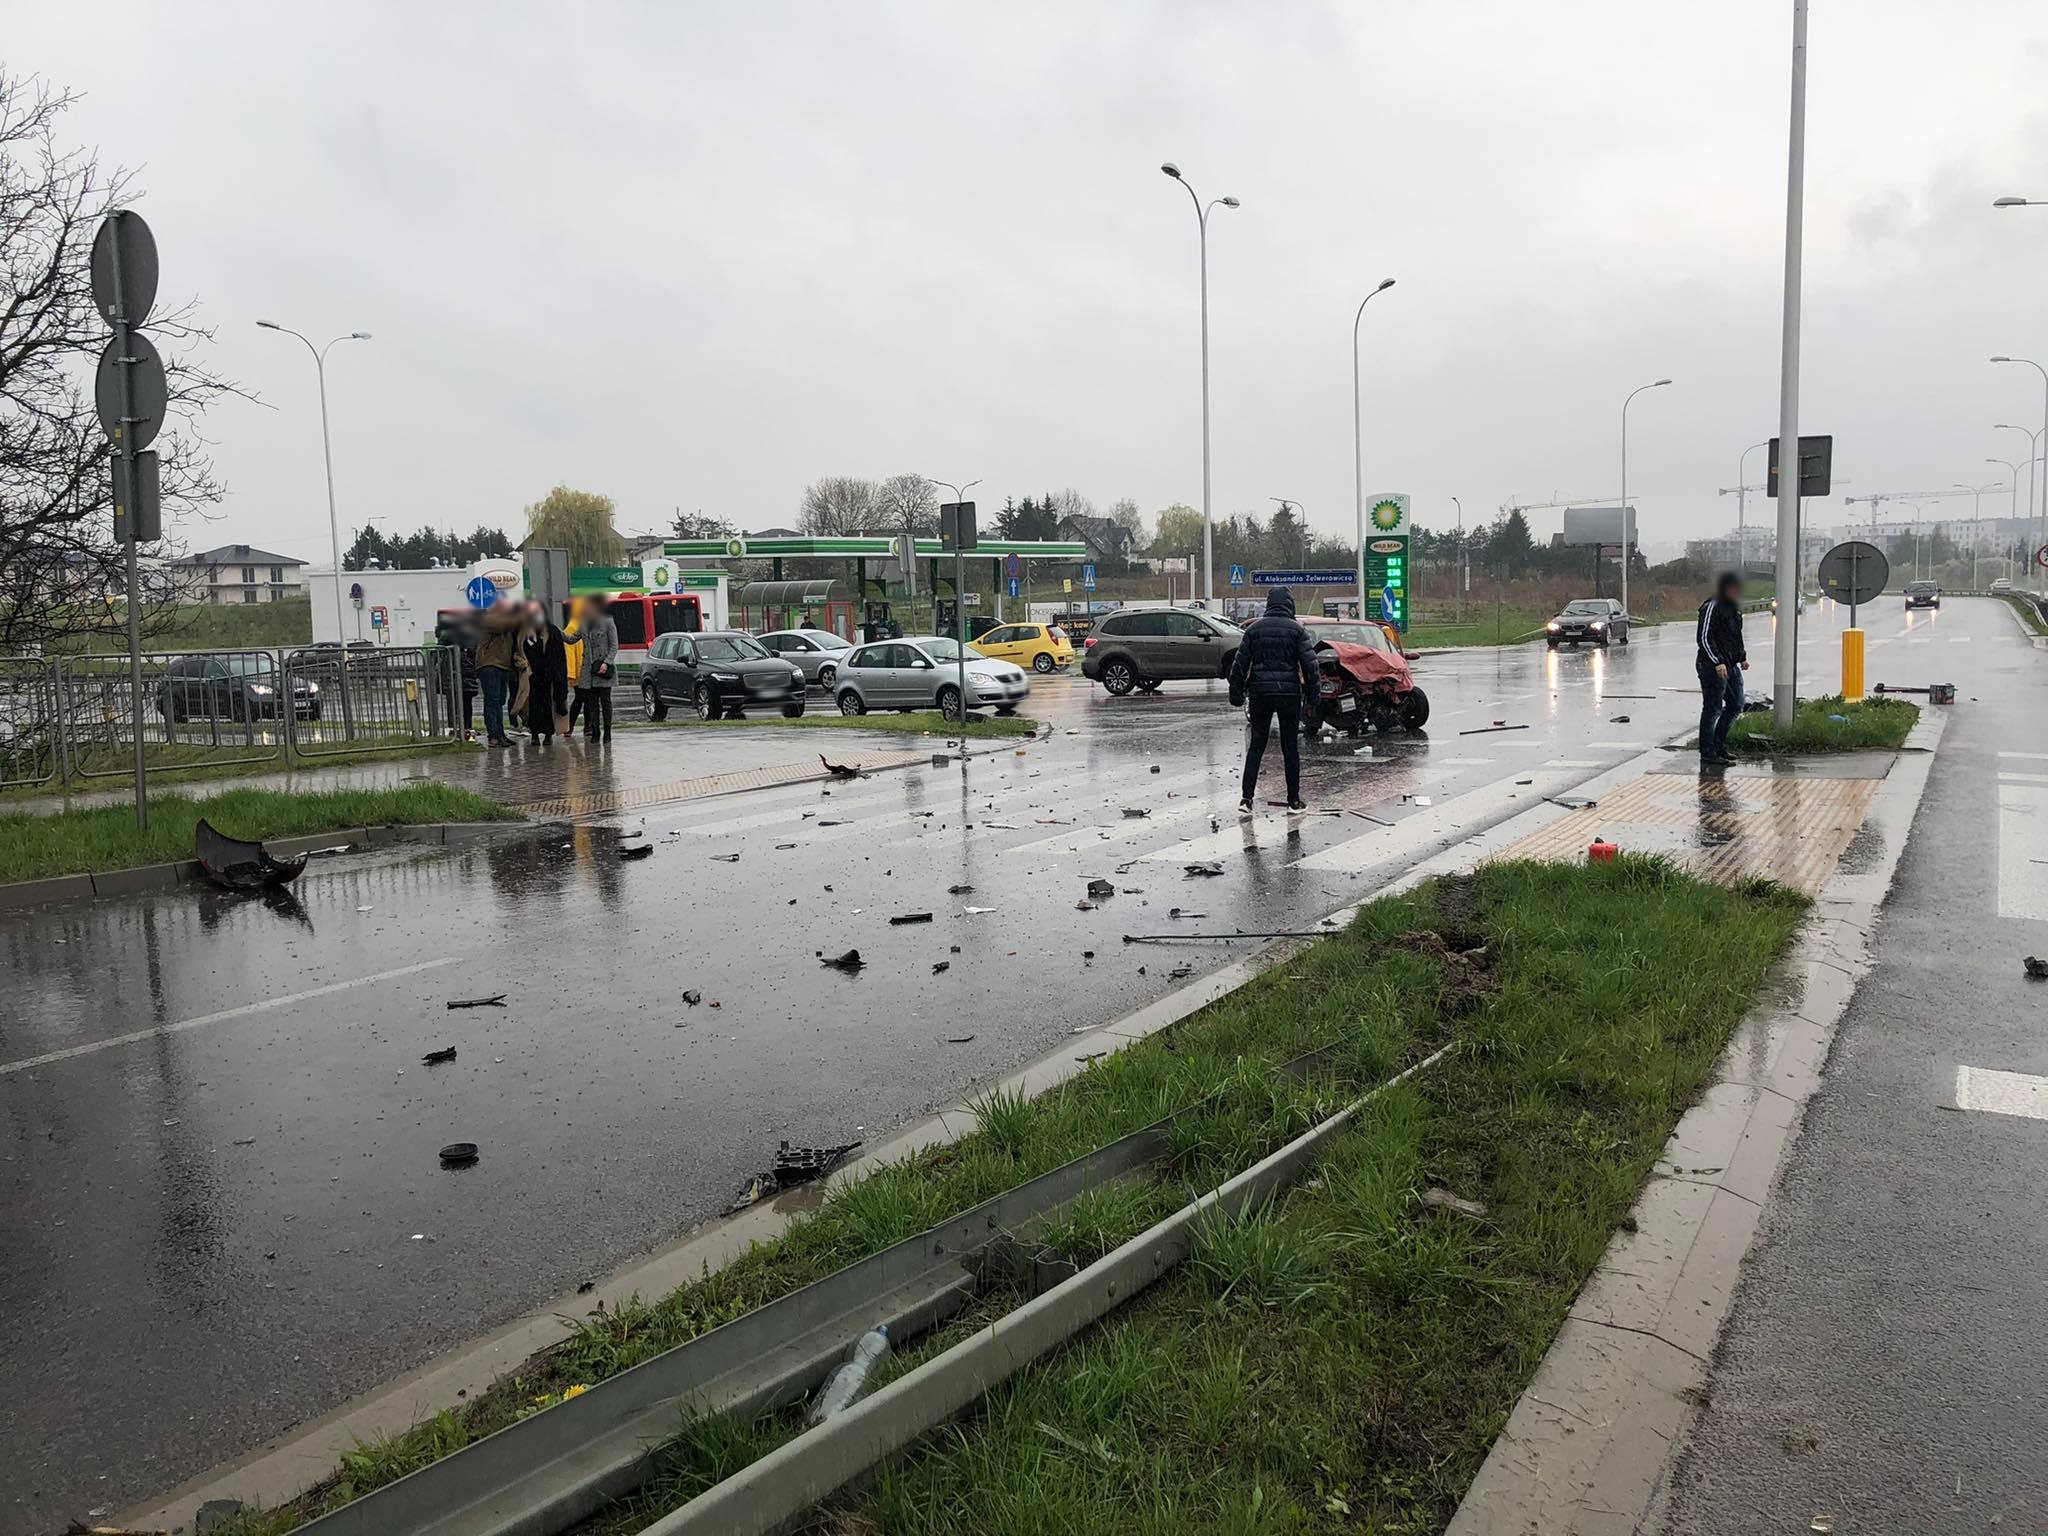 Groźny wypadek w Lublinie, skrzyżowanie jest częściowo nieprzejezdne (zdjęcia)